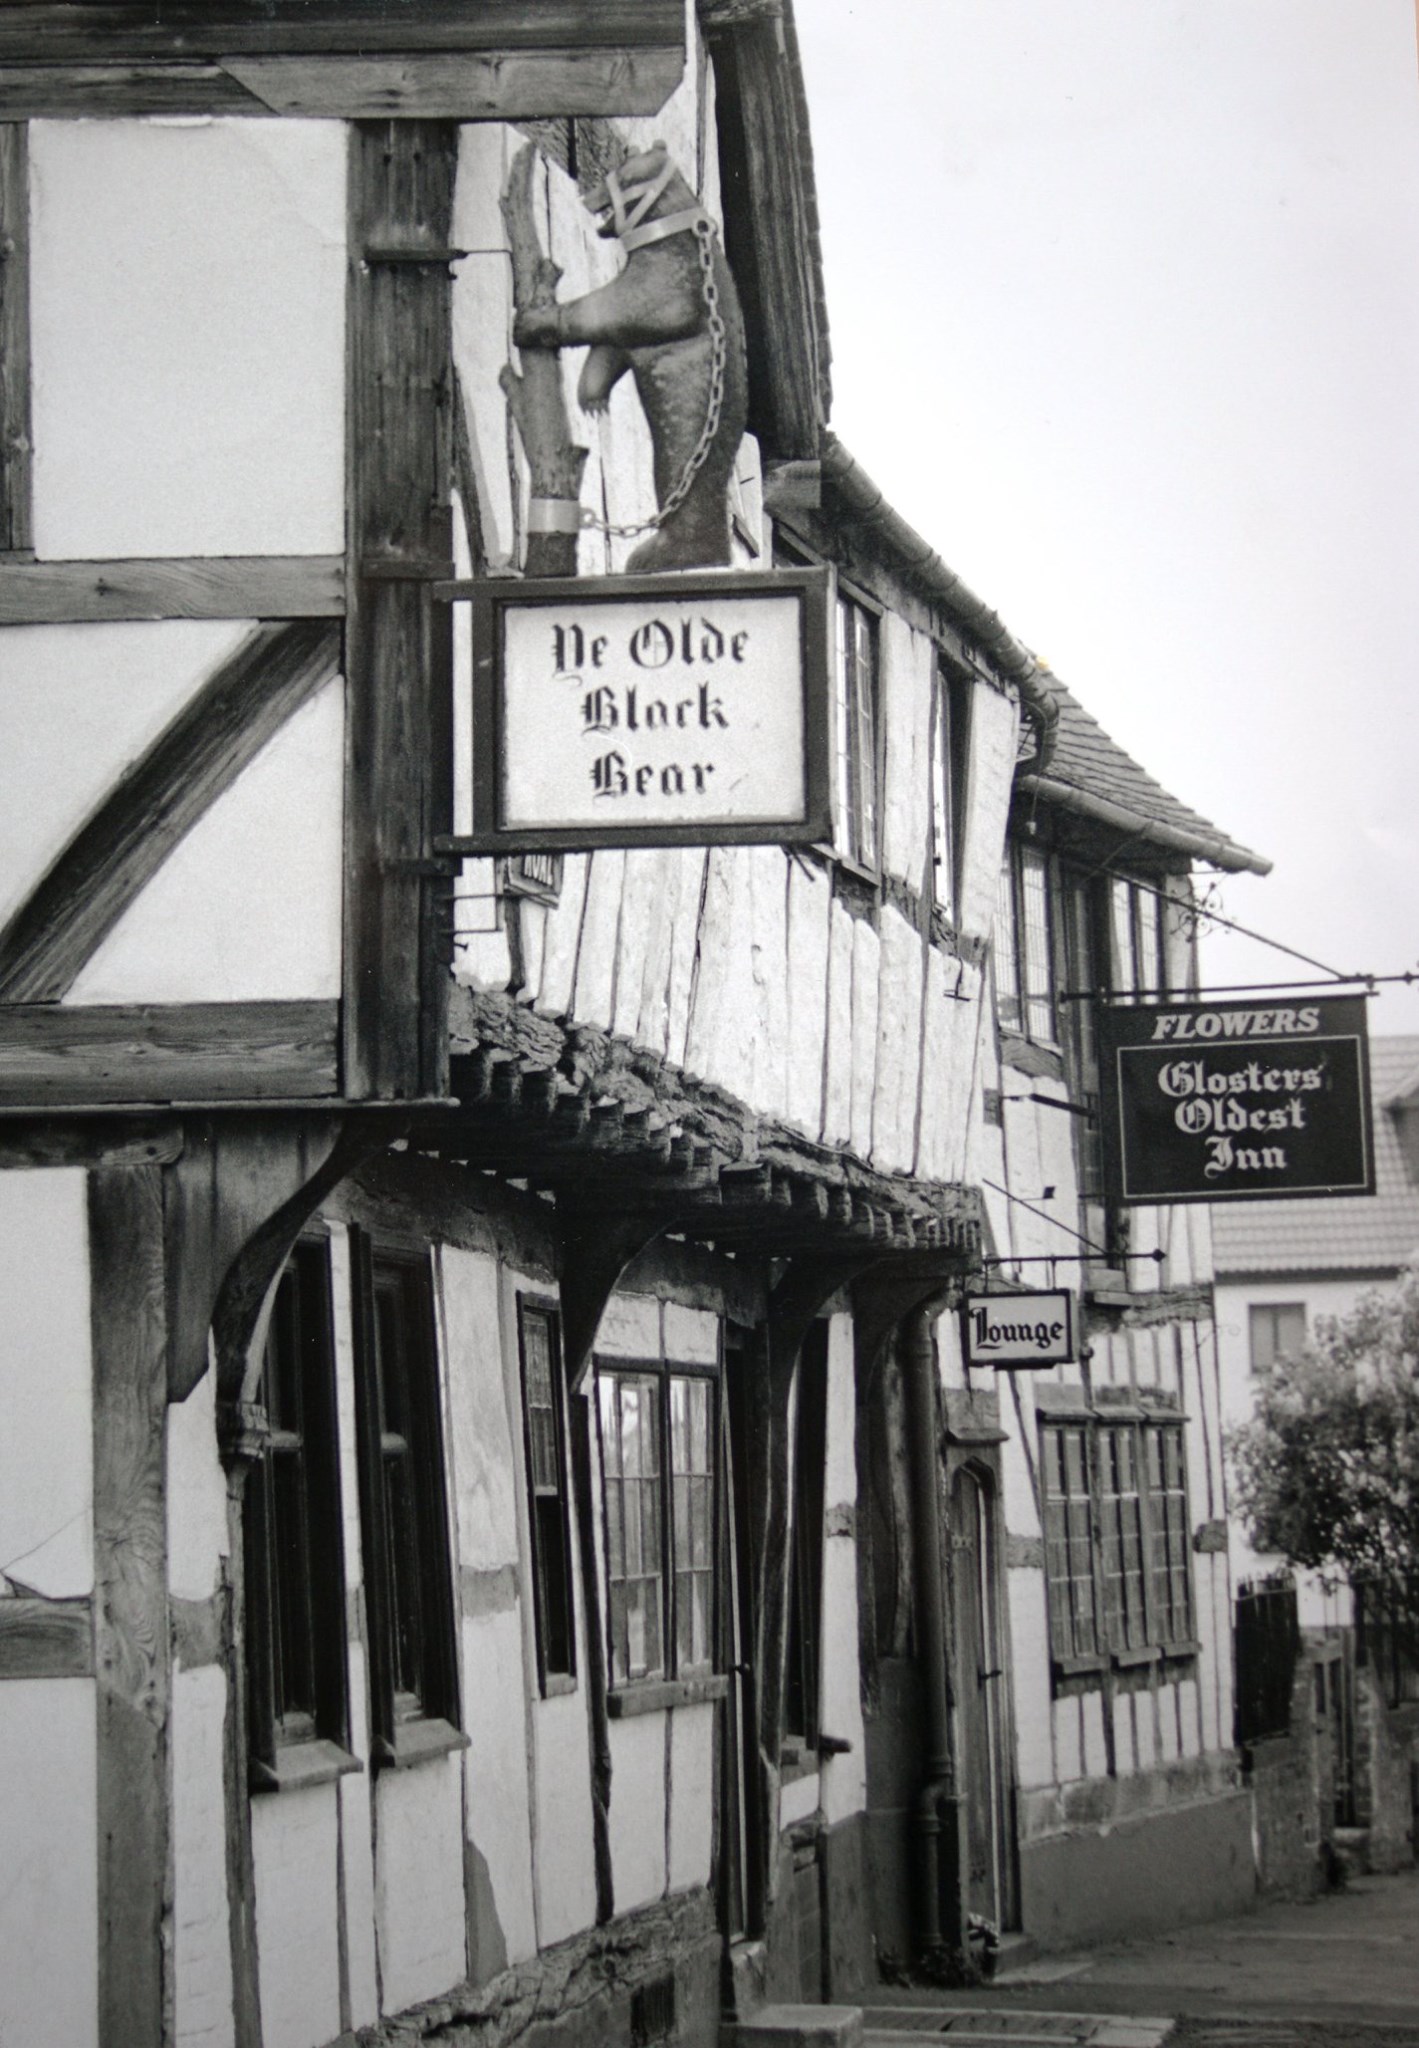 Black Bear pub, Tewkesbury